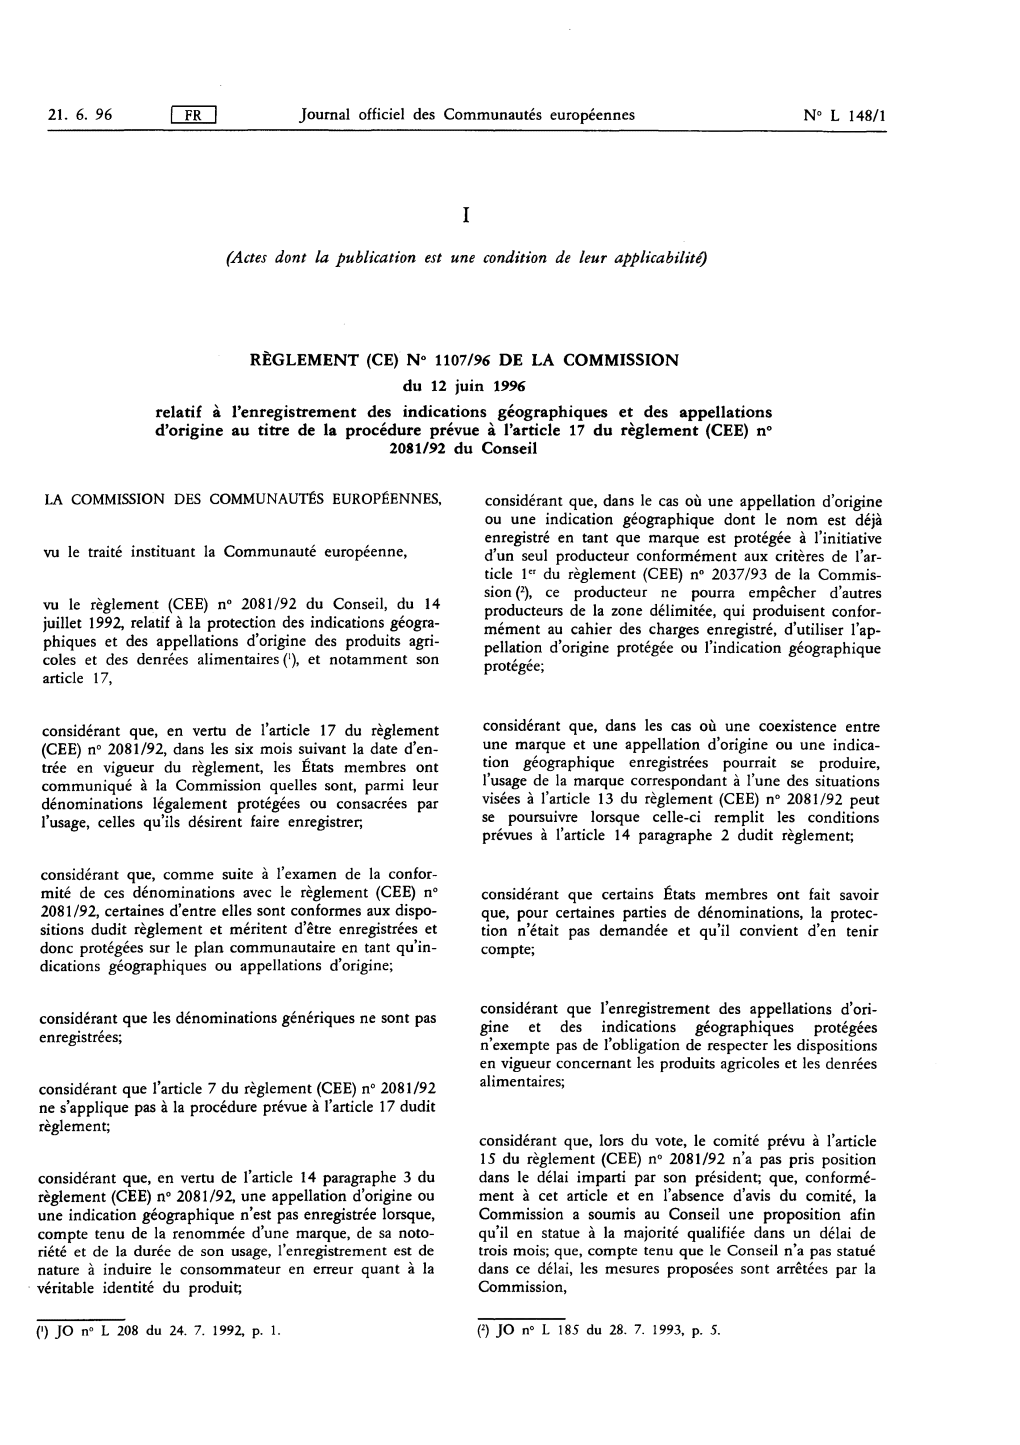 RÈGLEMENT (CE) N° 1107/96 DE LA COMMISSION Pellation D'origine Protégée Ou L'indication Géographique Phiques Et Des Appella